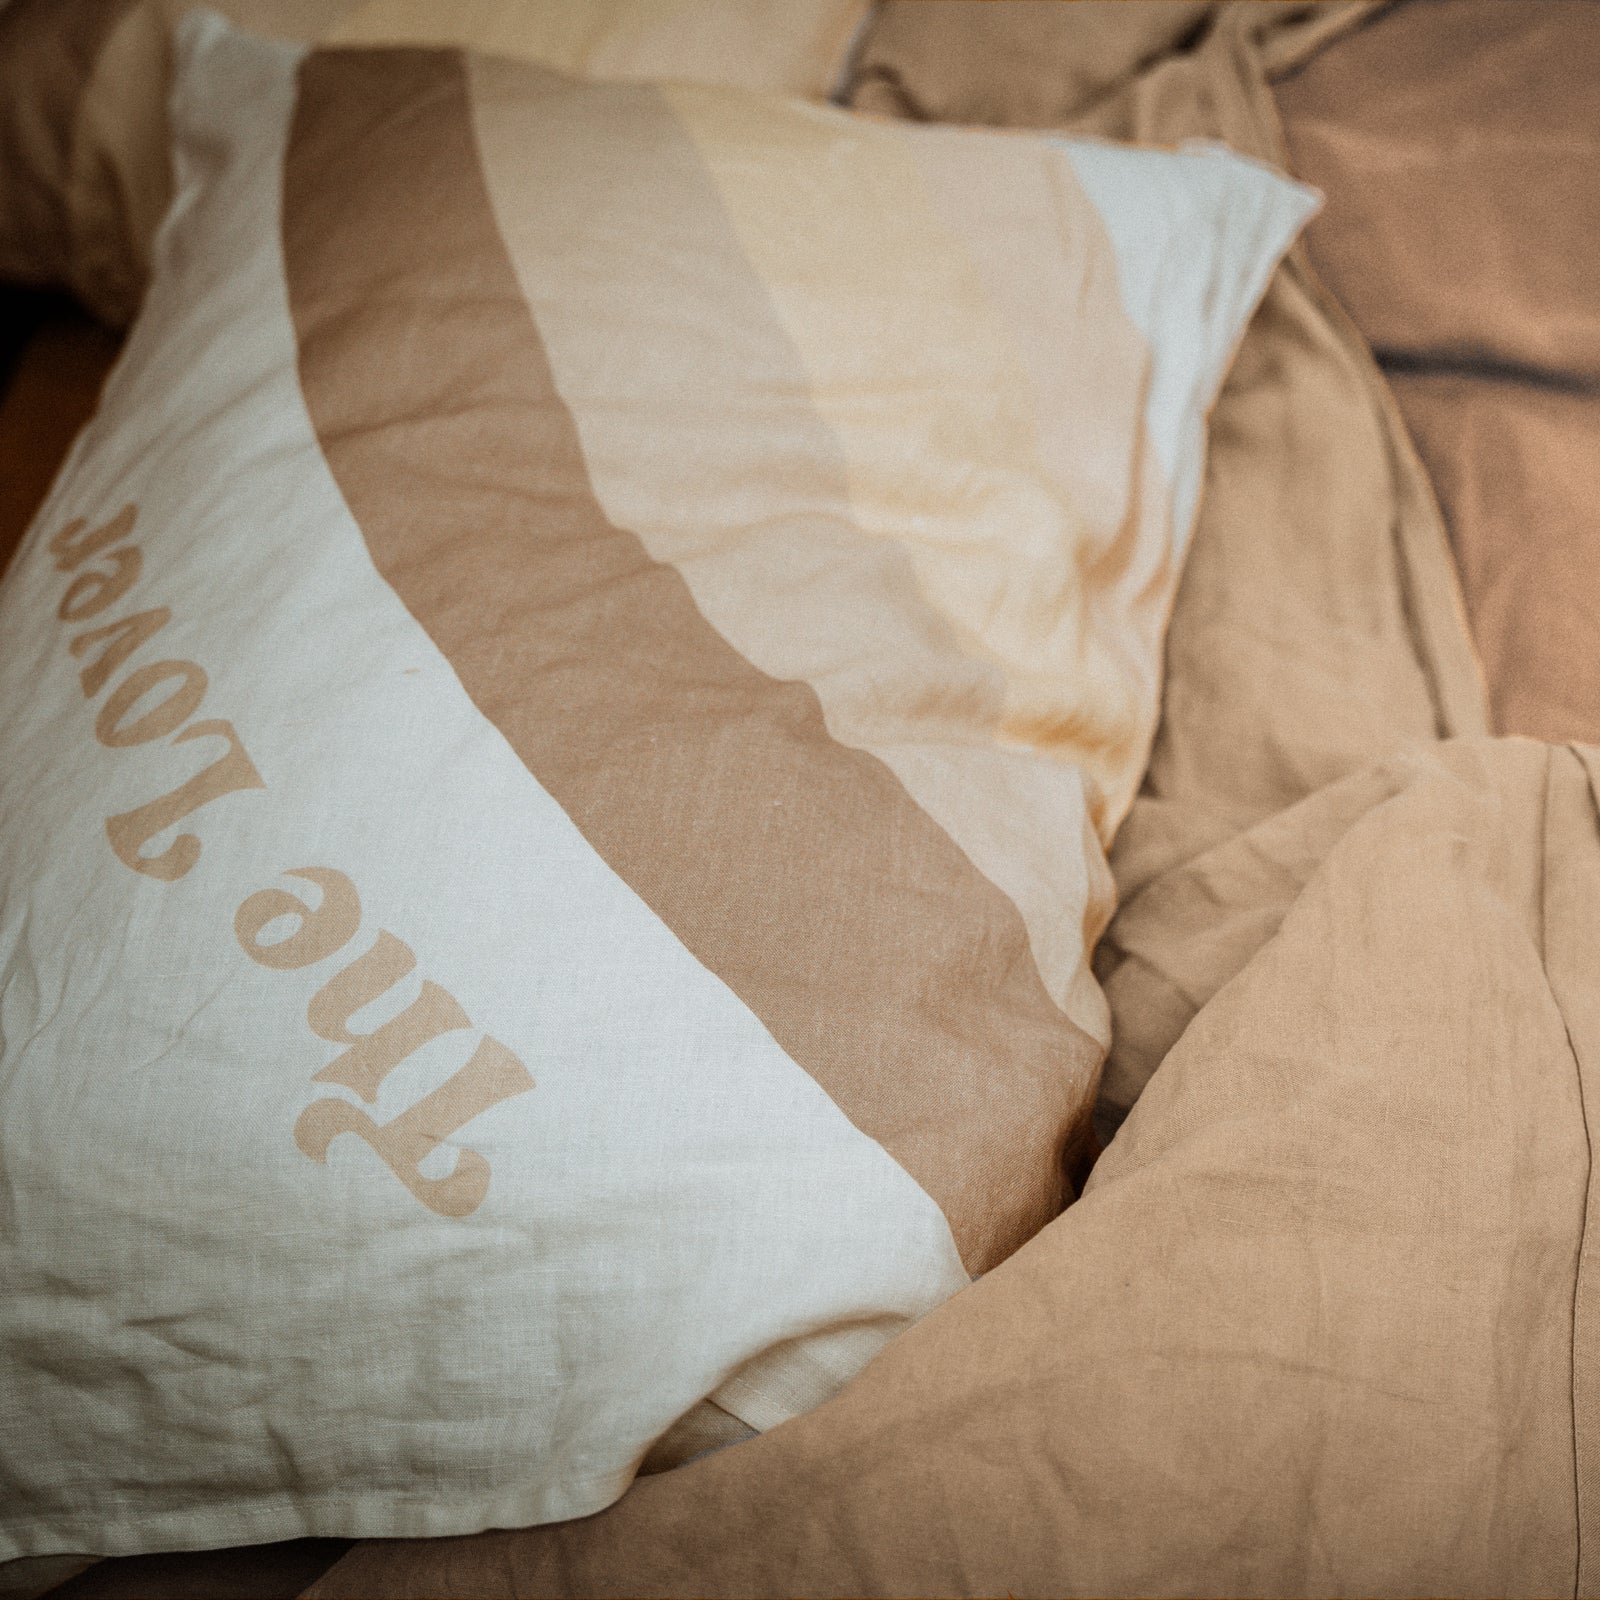 The Lover / The Dreamer Pillowcase SET - Buttercream